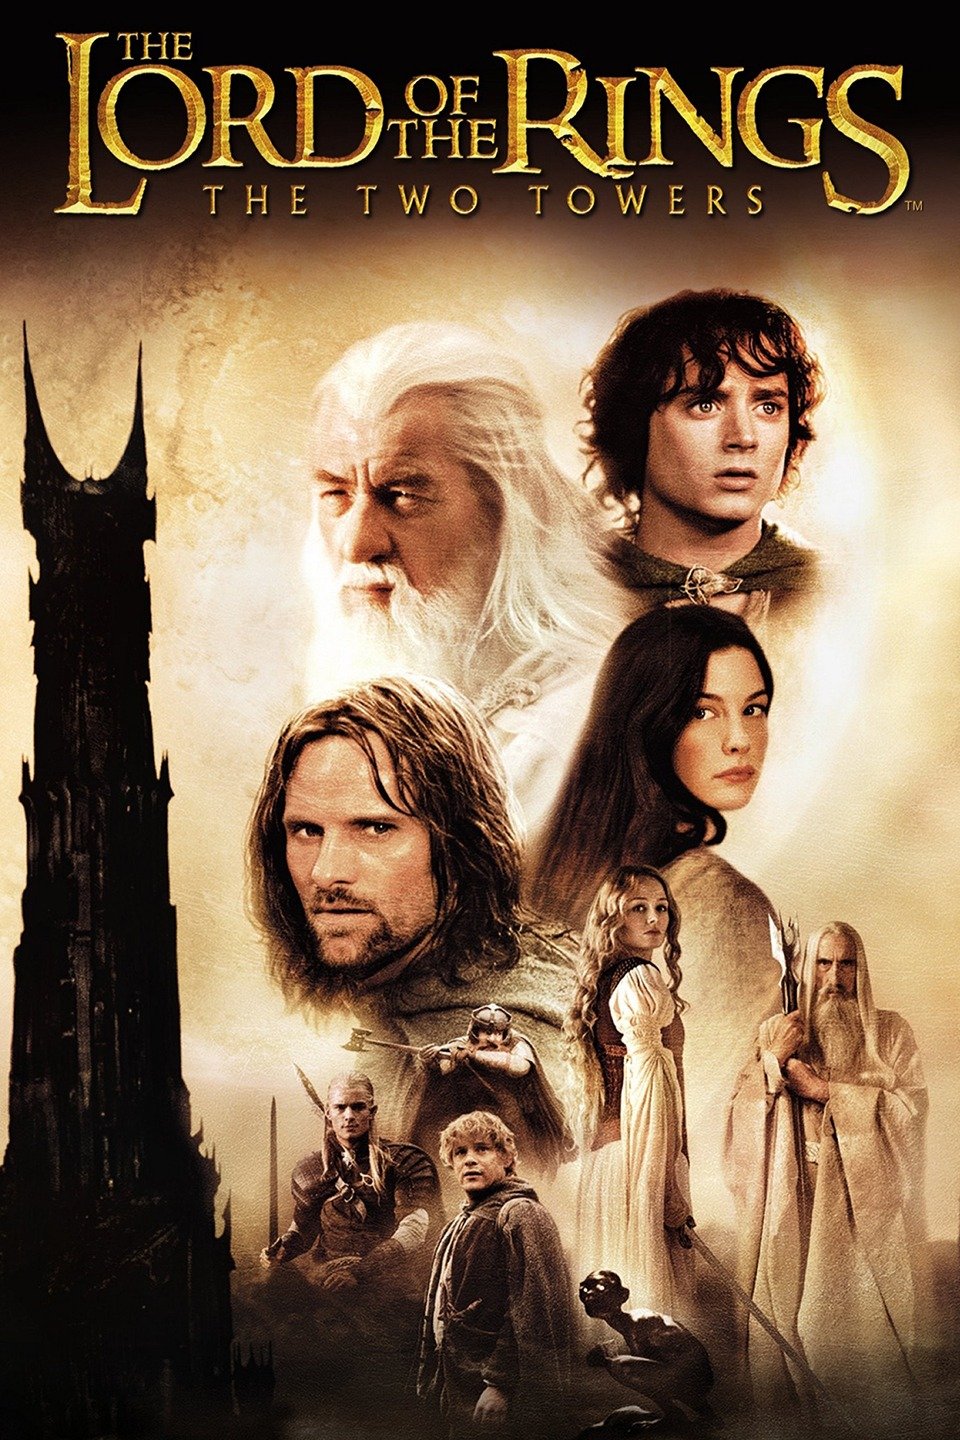 ดูหนังออนไลน์ฟรี The Lord of The Rings The Two Towers (2002) ลอร์ดออฟเดอะริงส์ ศึกหอคอยคู่กู้พิภพ ภาค 2